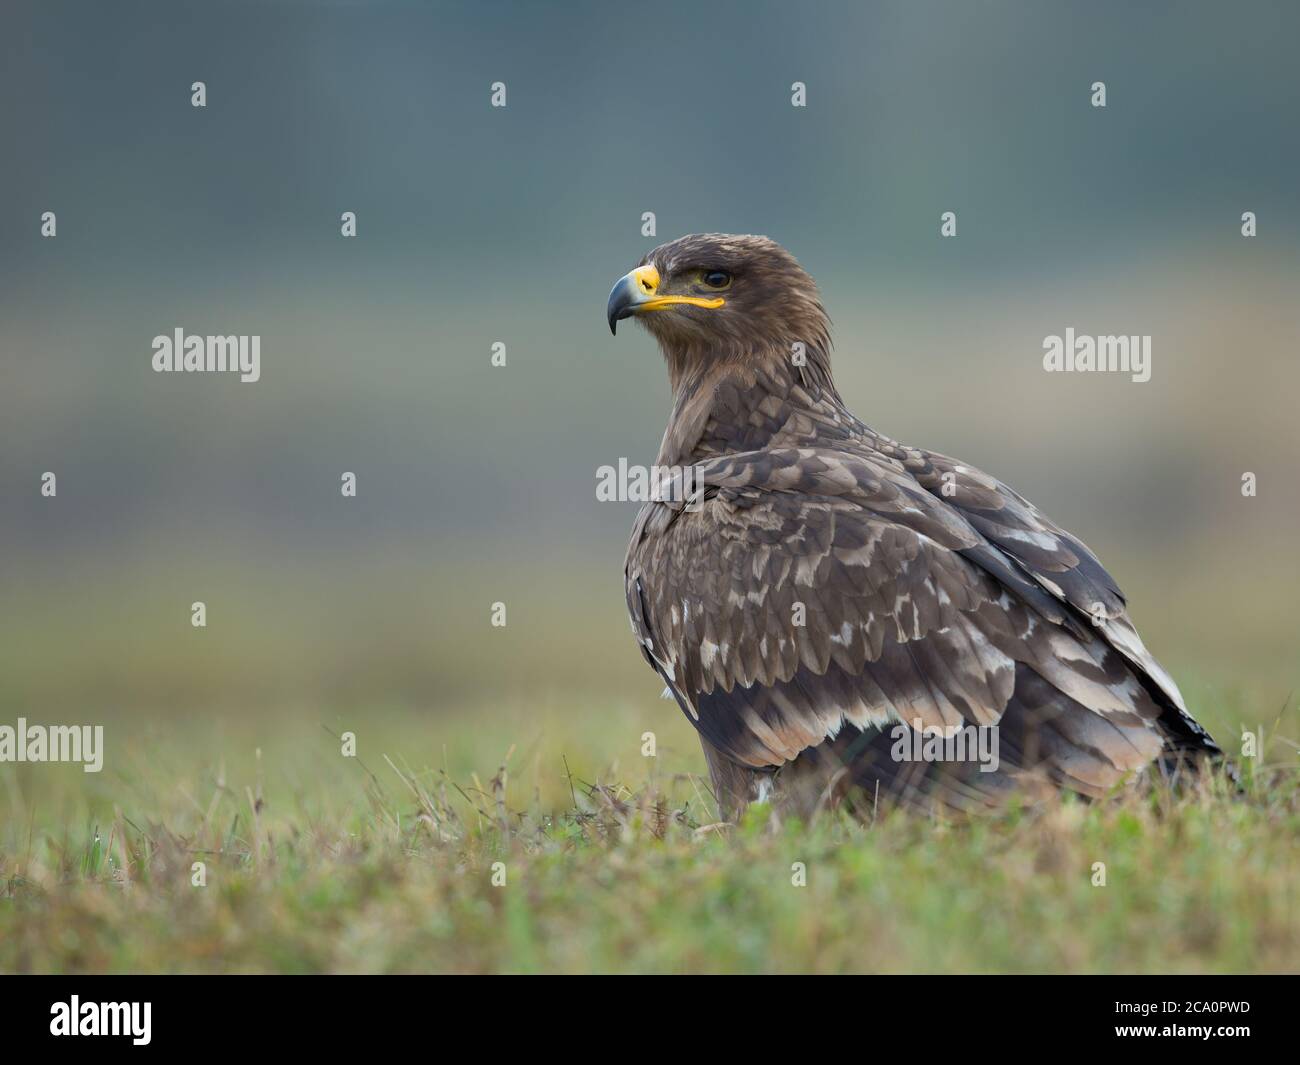 Der Steppenadler (Aquila nipalensis) ist ein großer Raubvogel. Wie alle Adler gehört sie zur Familie Accipitridae. Stockfoto